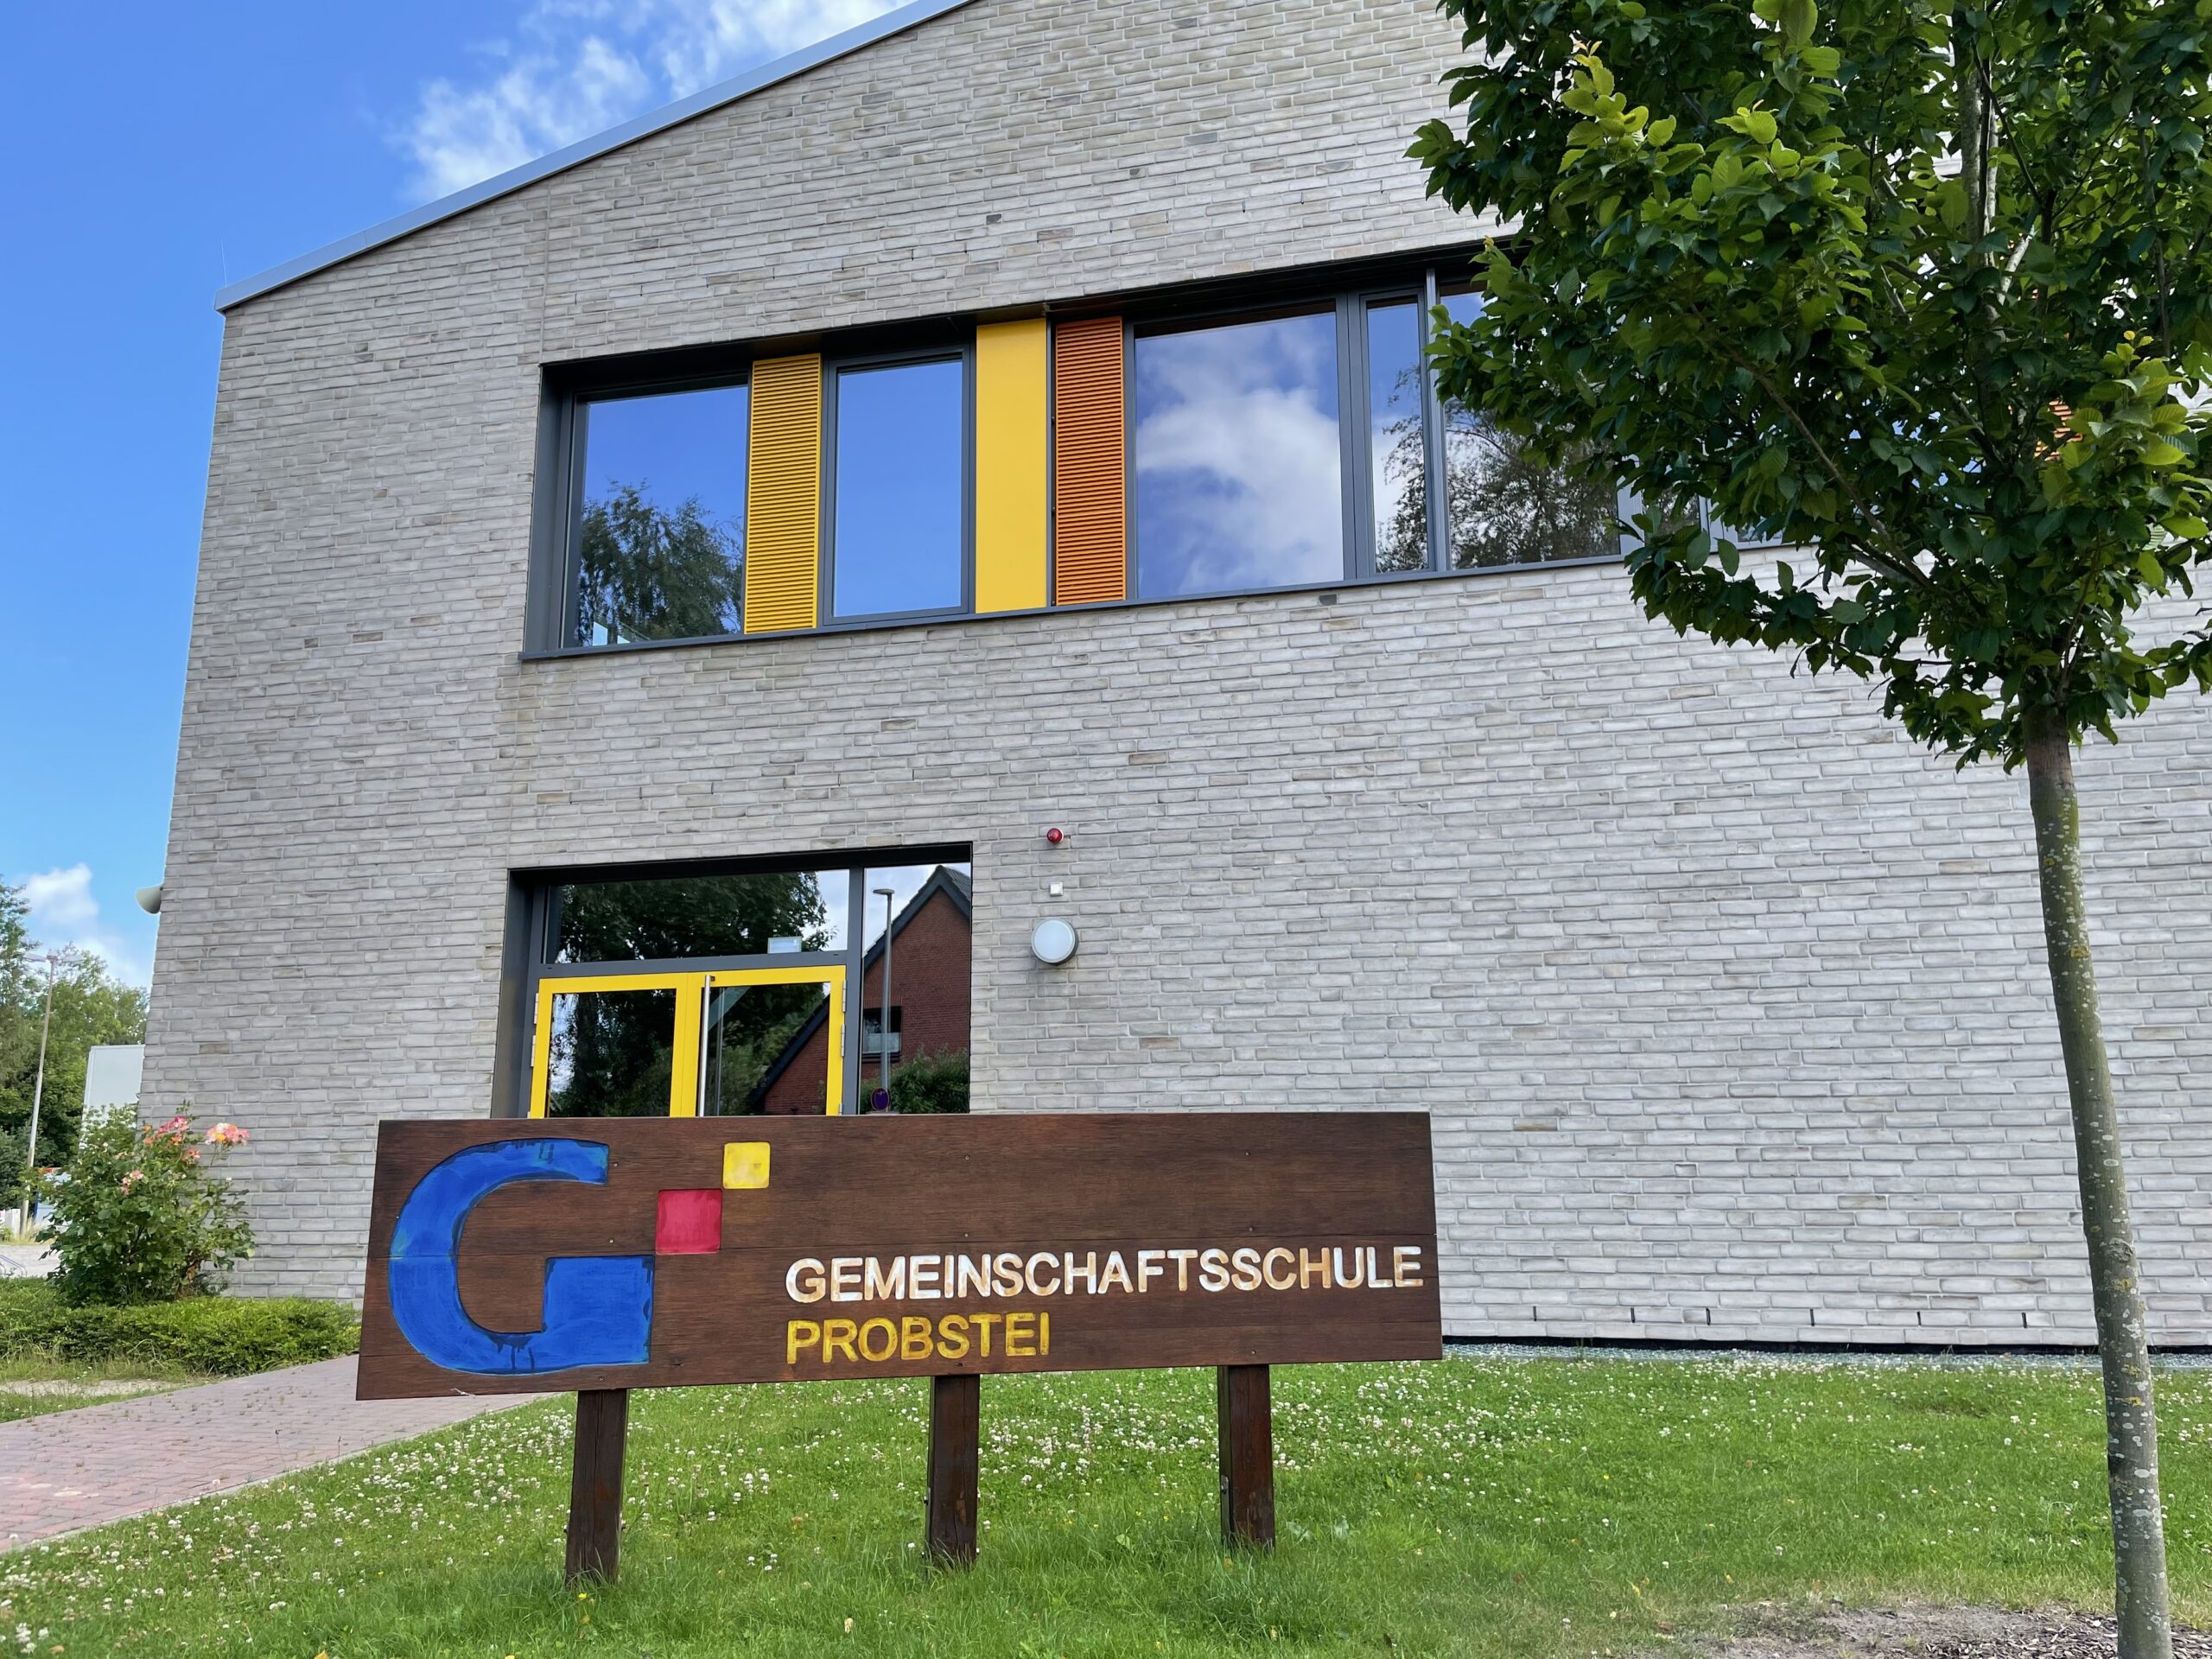 Gemeinschaftsschule Probstei in Schönberg: Nachhaltiges Medienkonzept als Erfolgsfaktor für digitalgestützten Unterricht